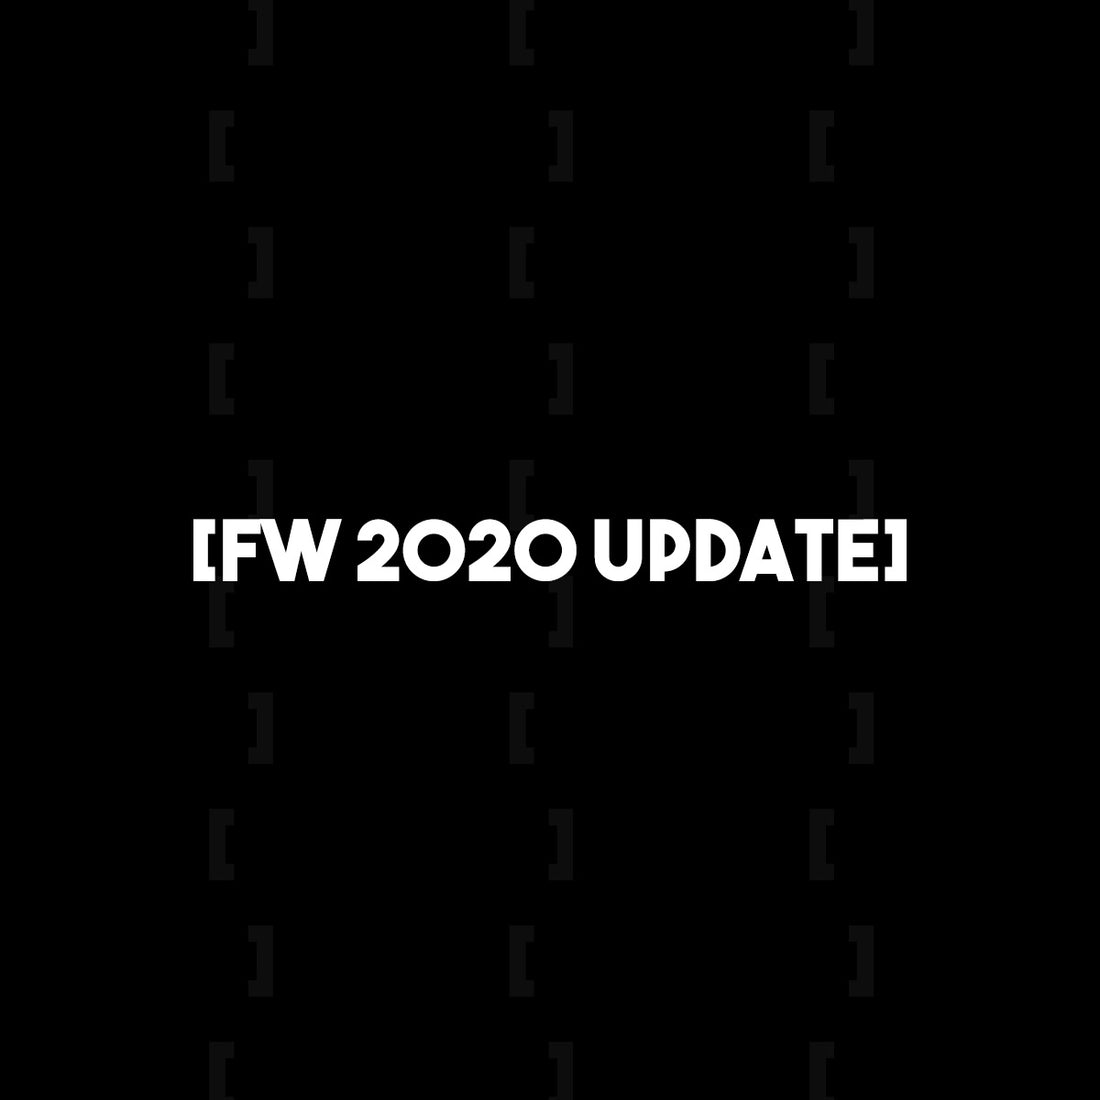 FW 2020 Updates